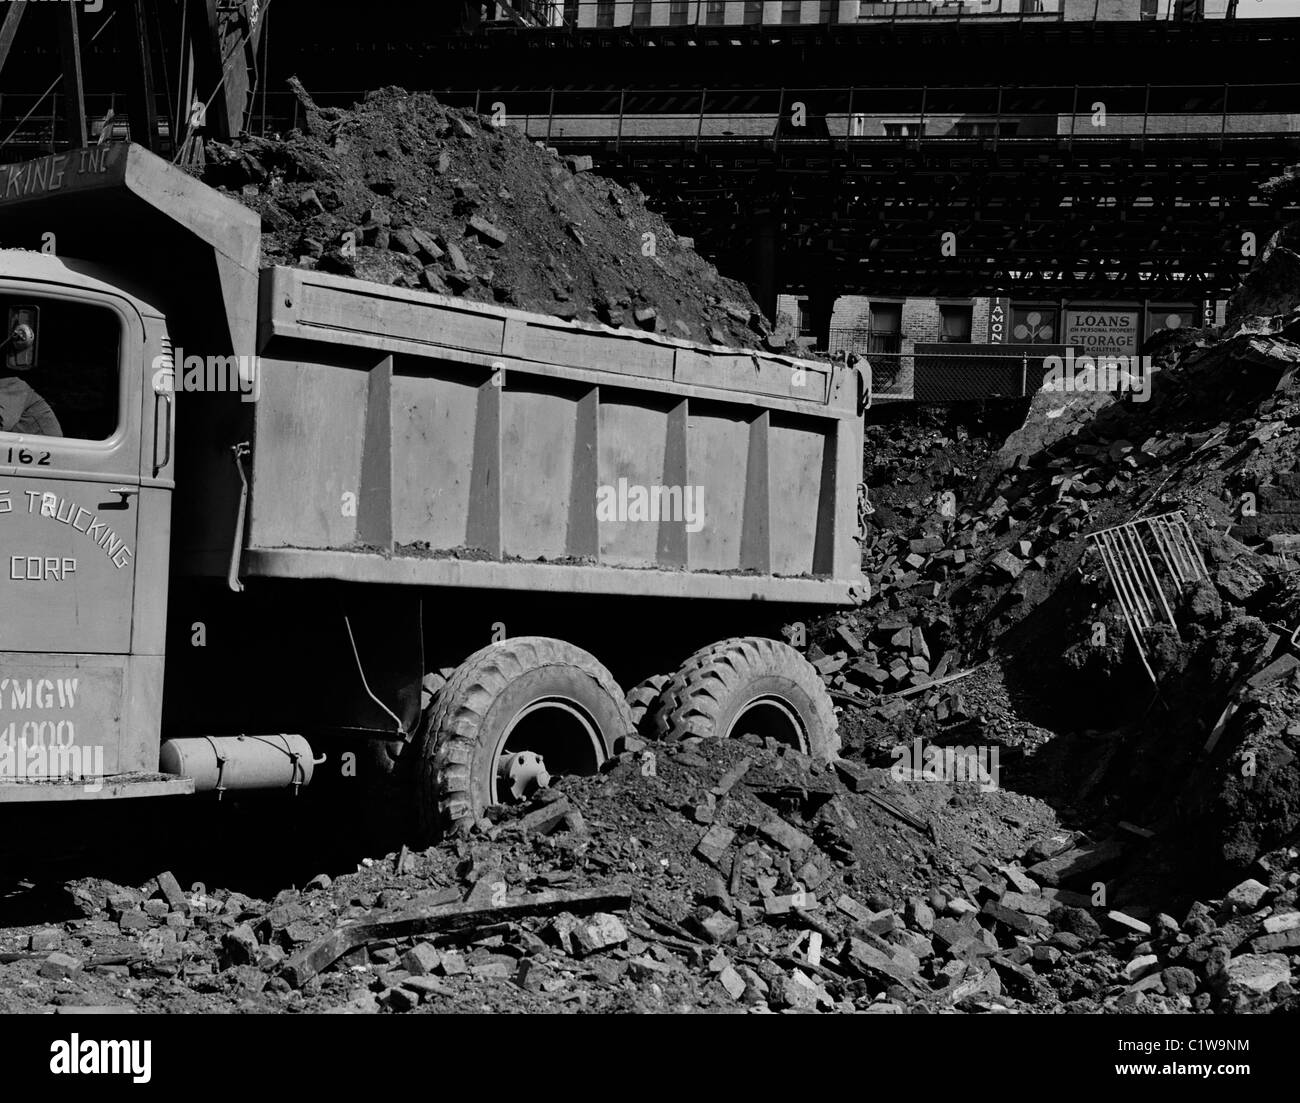 Camion transportant le sol dans le cadre de projet d'excavation Banque D'Images